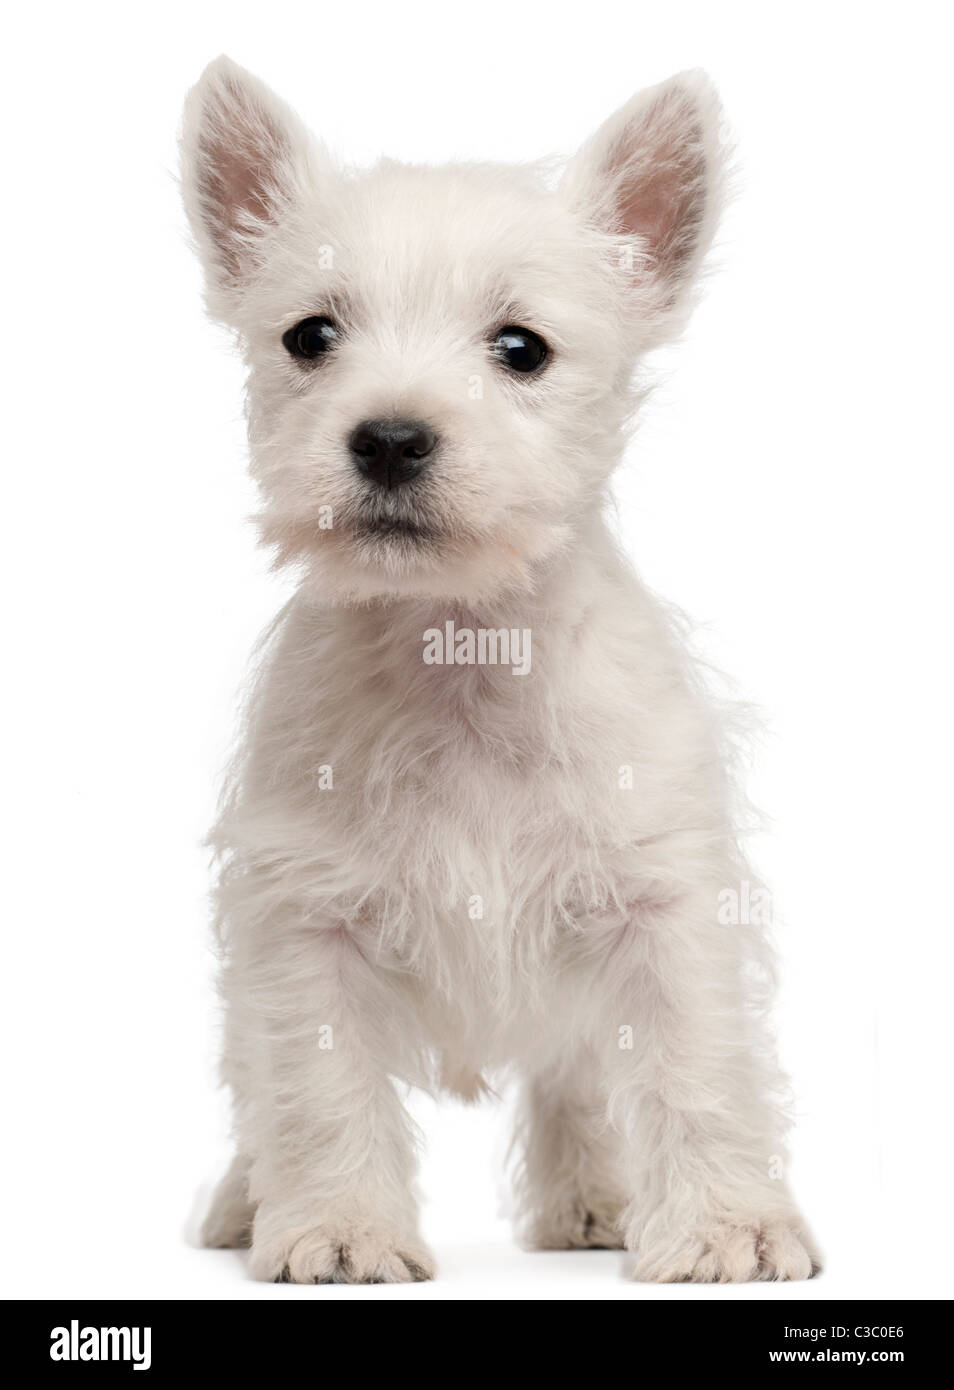 West Highland Terrier cucciolo, 7 settimane di età, di fronte a uno sfondo bianco Foto Stock